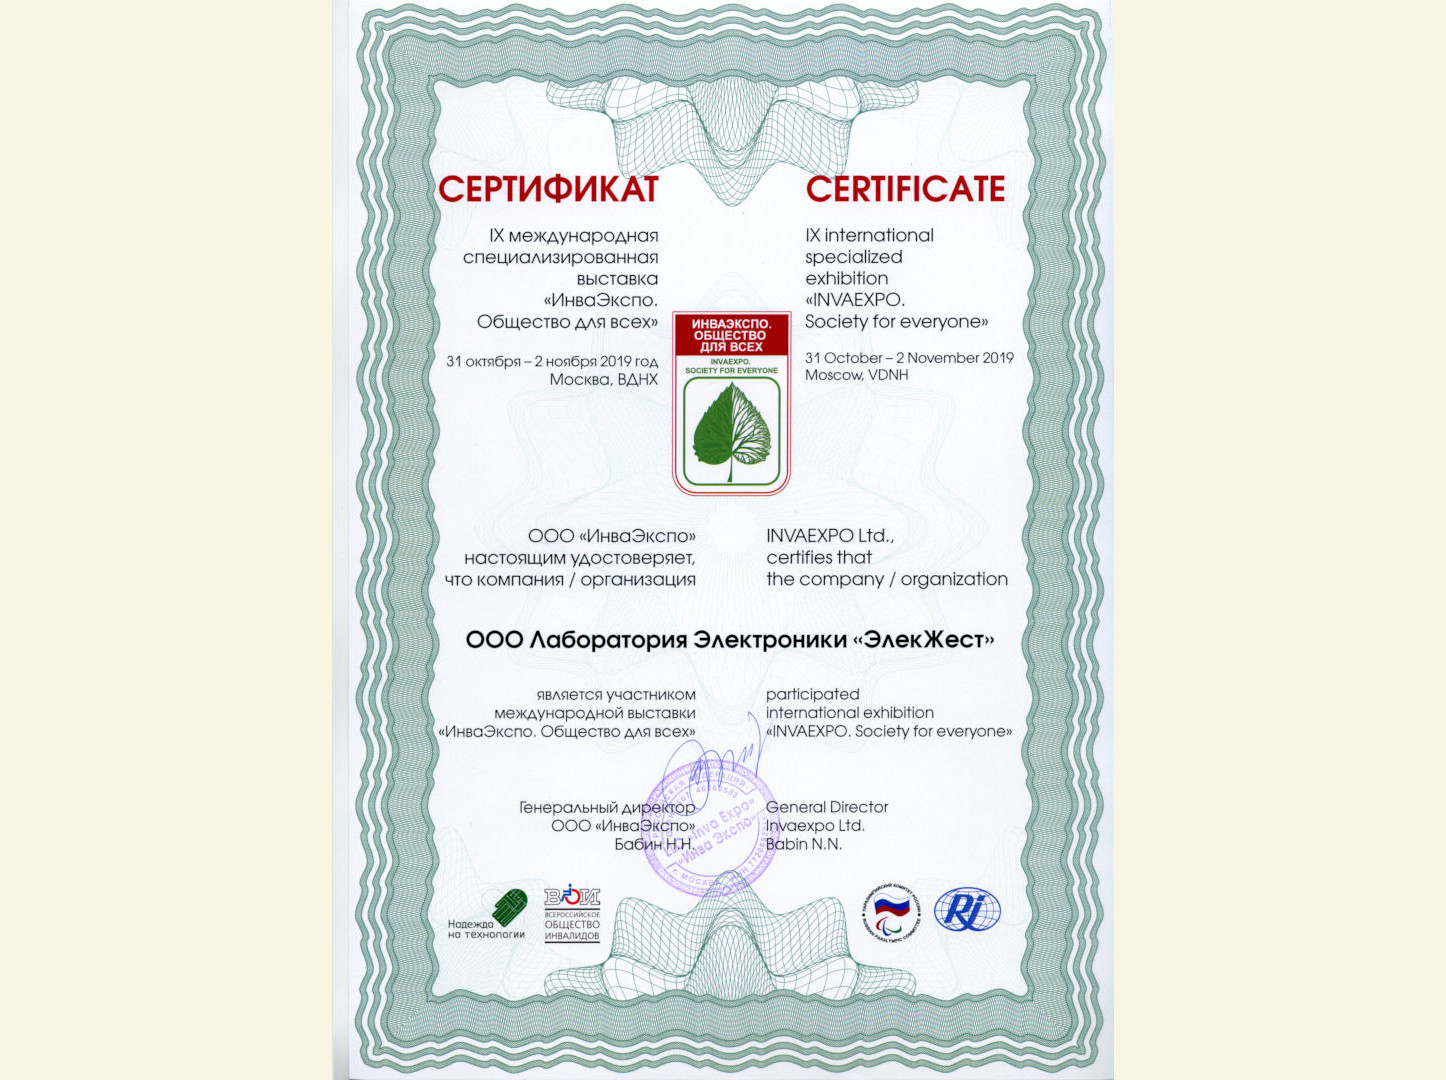 Сертификат Инва Экcпо настоящим удостоверяет, что компания ООО Лаборатория Электроники Элекжест является участников международной выставки ИнваЭкспо Общество для всех.